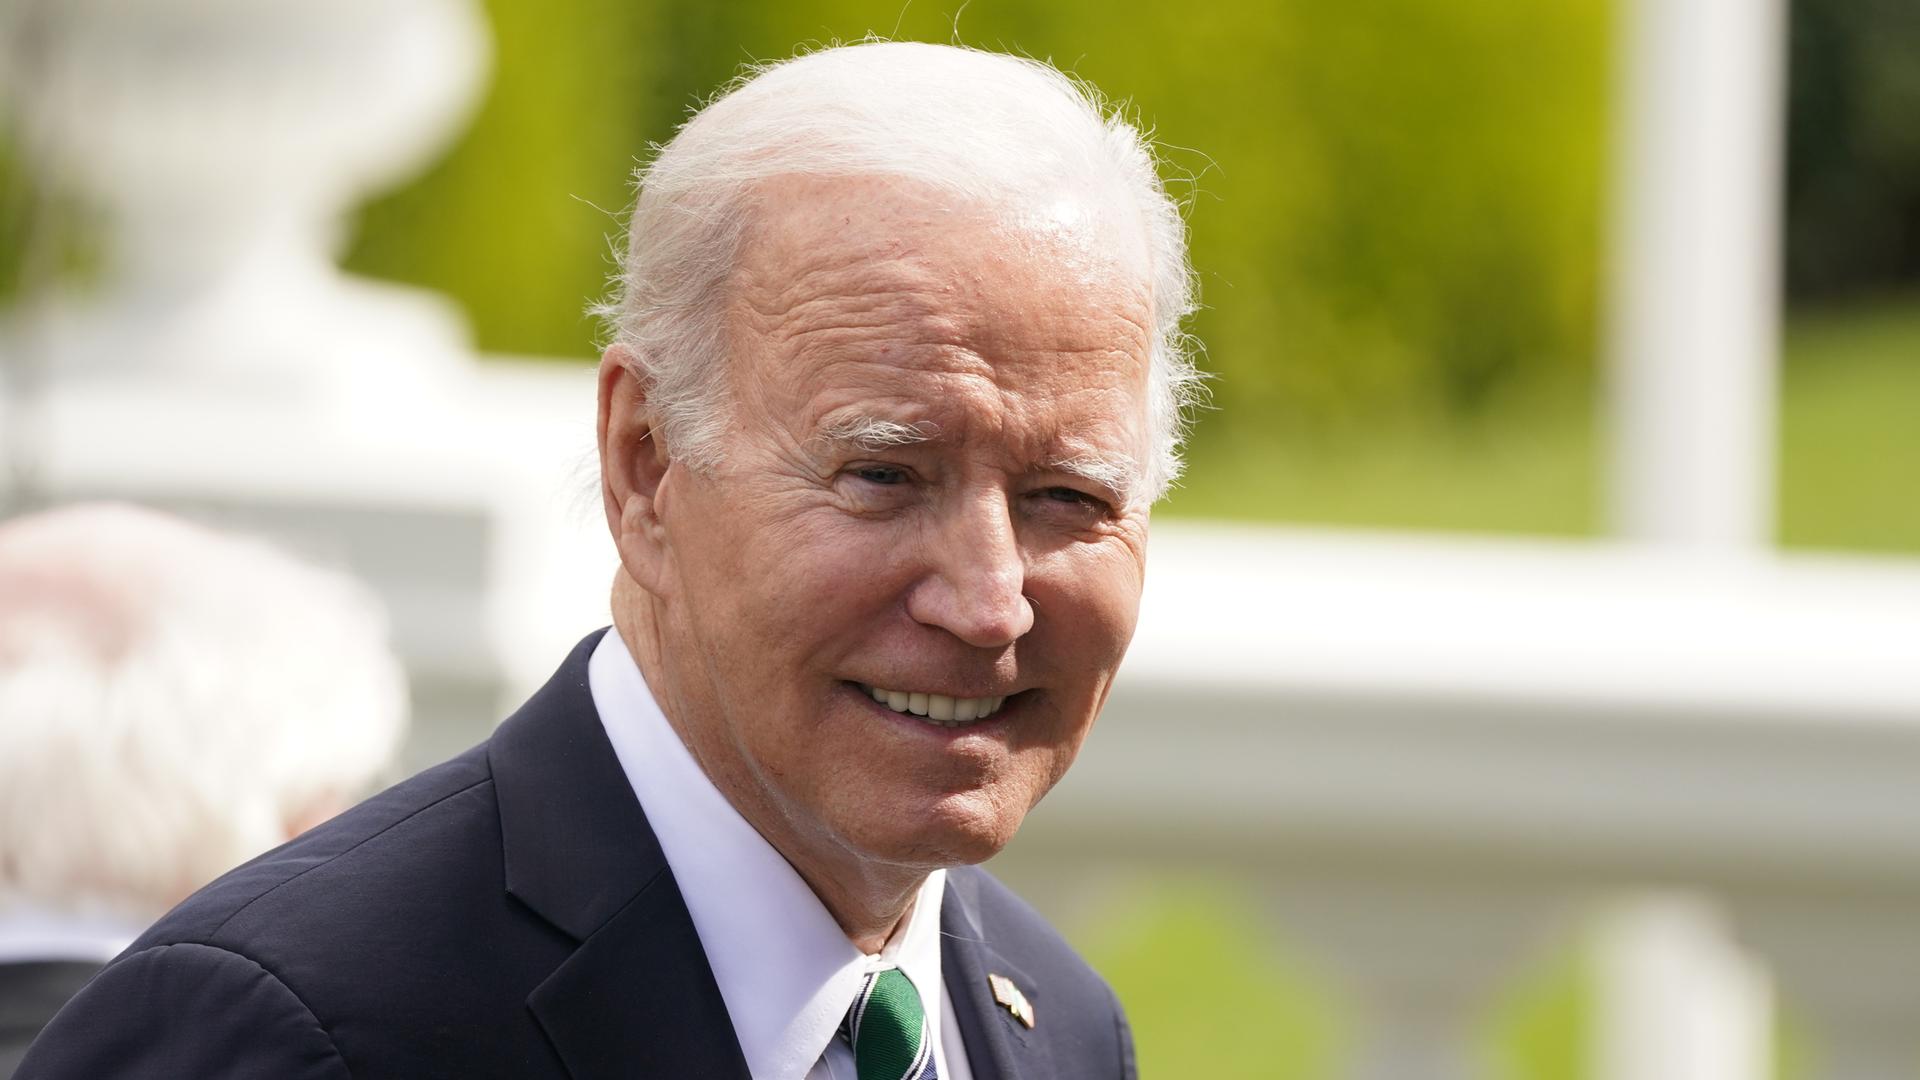 Porträtbild von US-Präsident Joe Biden: Er lächelt, im Hintergrund sind sonniges Wetter und grüne Pflanzen zu sehen.